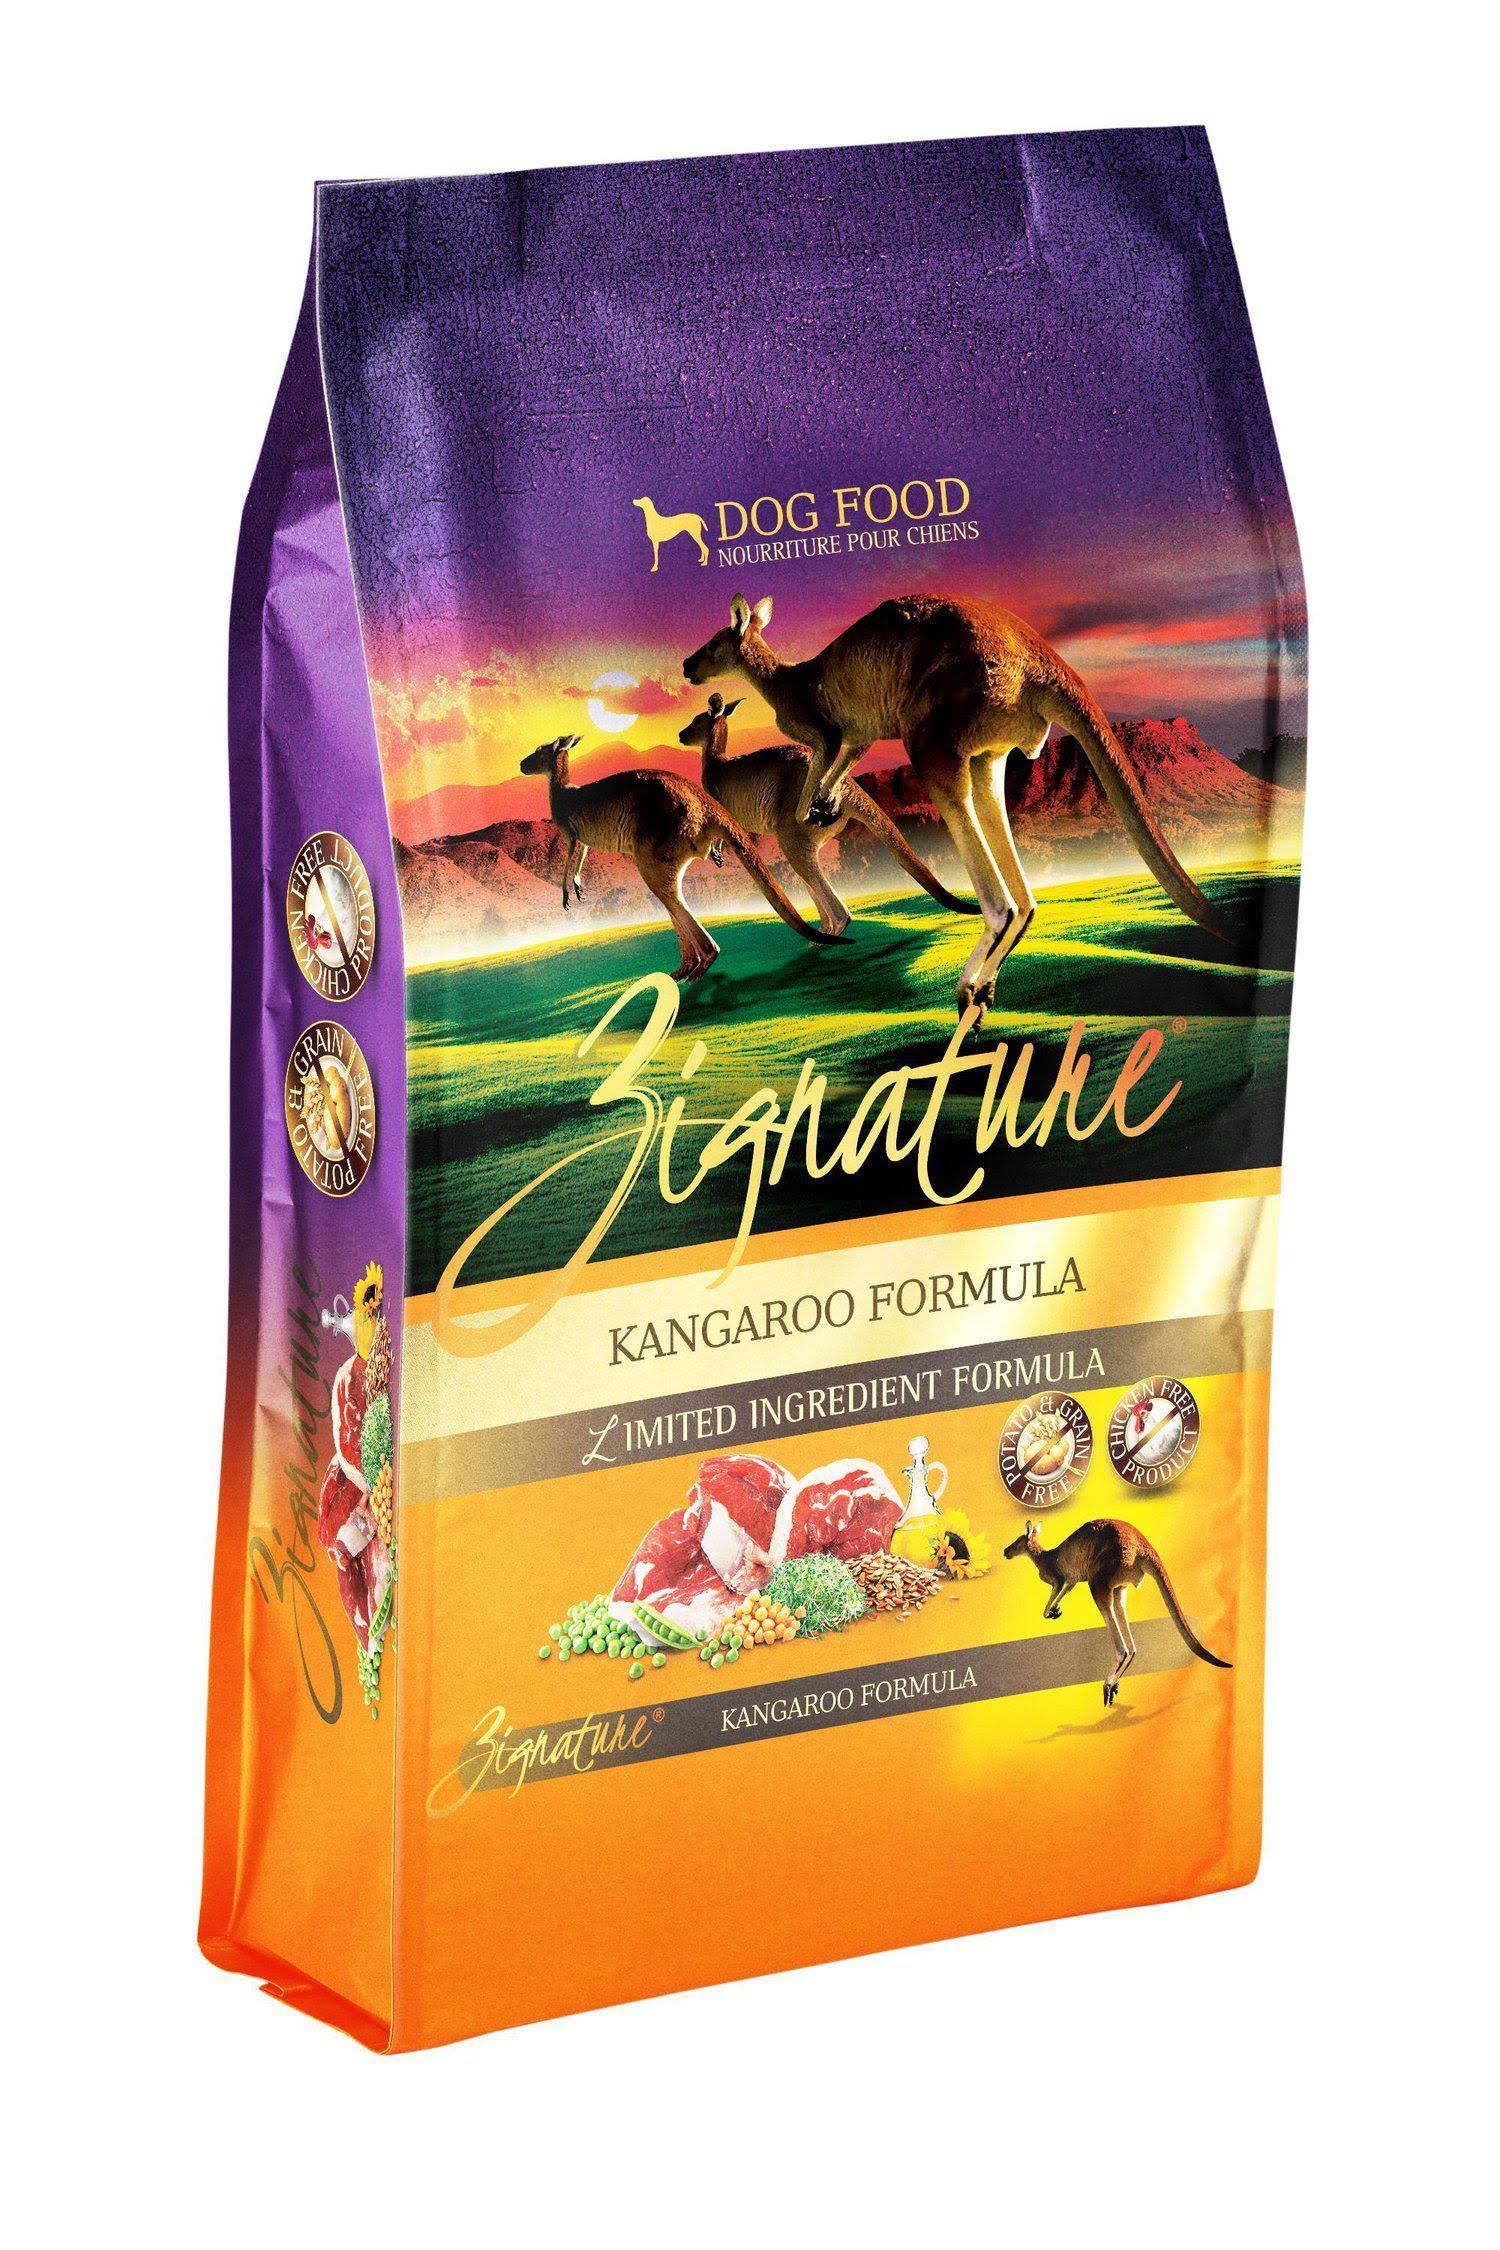 Zignature Kangaroo Limited Ingredient Formula Dry Dog Food 13.5 lbs